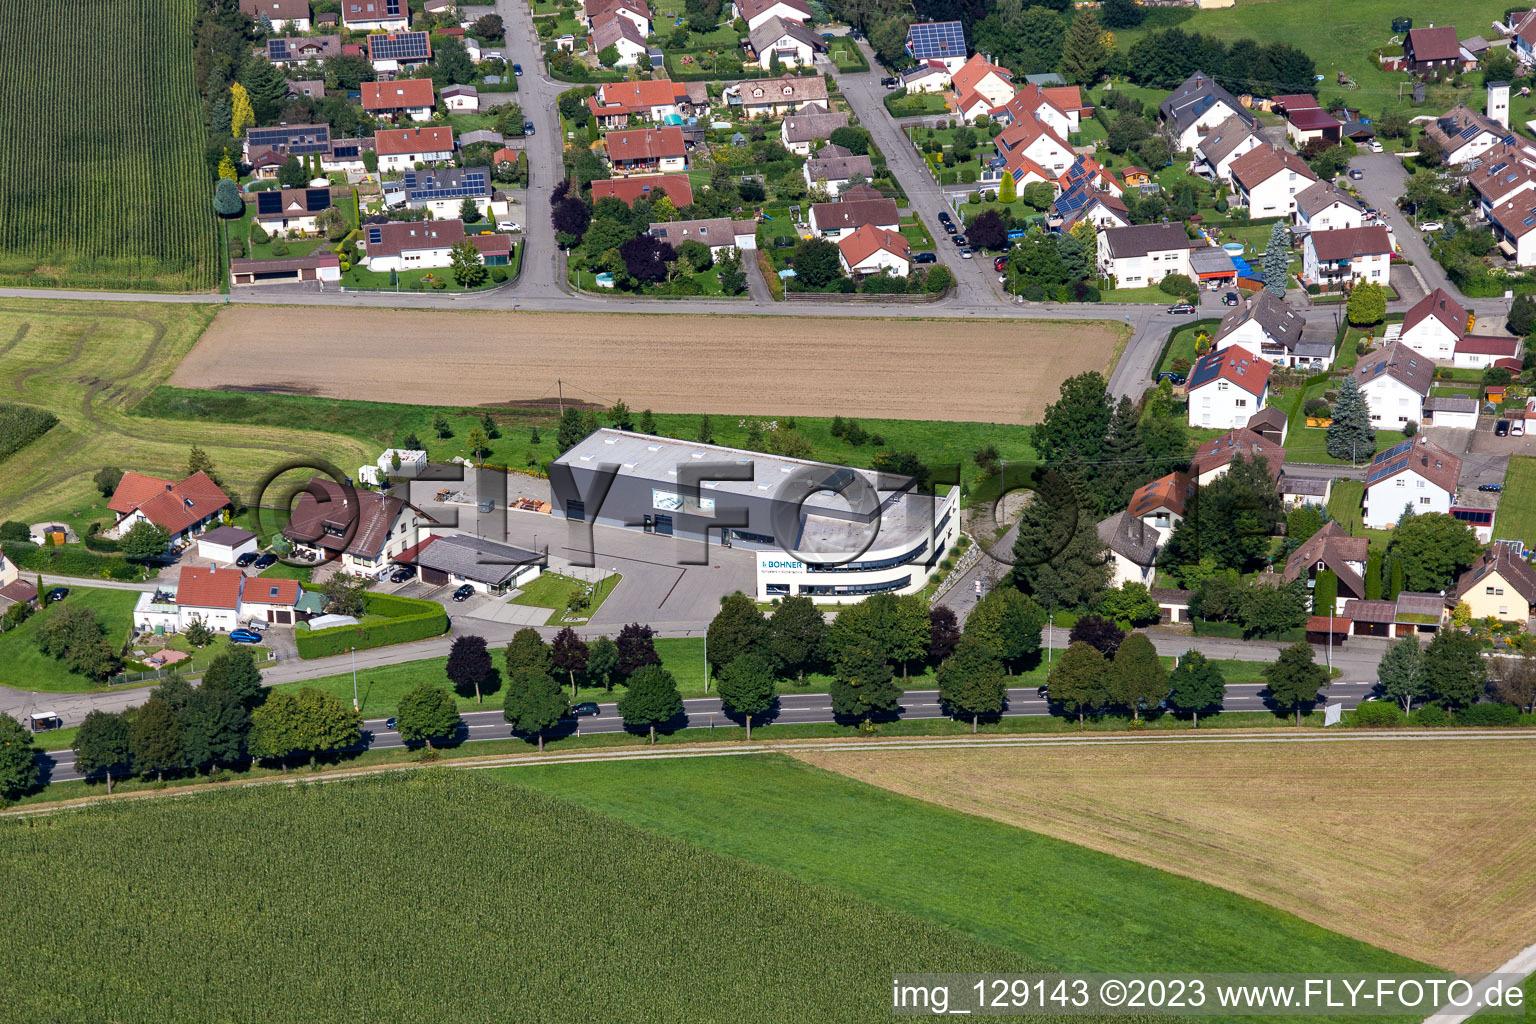 Vue aérienne de Locaux de l'entreprise Bohner Production GmbH avec halls, bâtiments d'entreprise et installations de production à le quartier Gaisbeuren in Bad Waldsee dans le département Bade-Wurtemberg, Allemagne